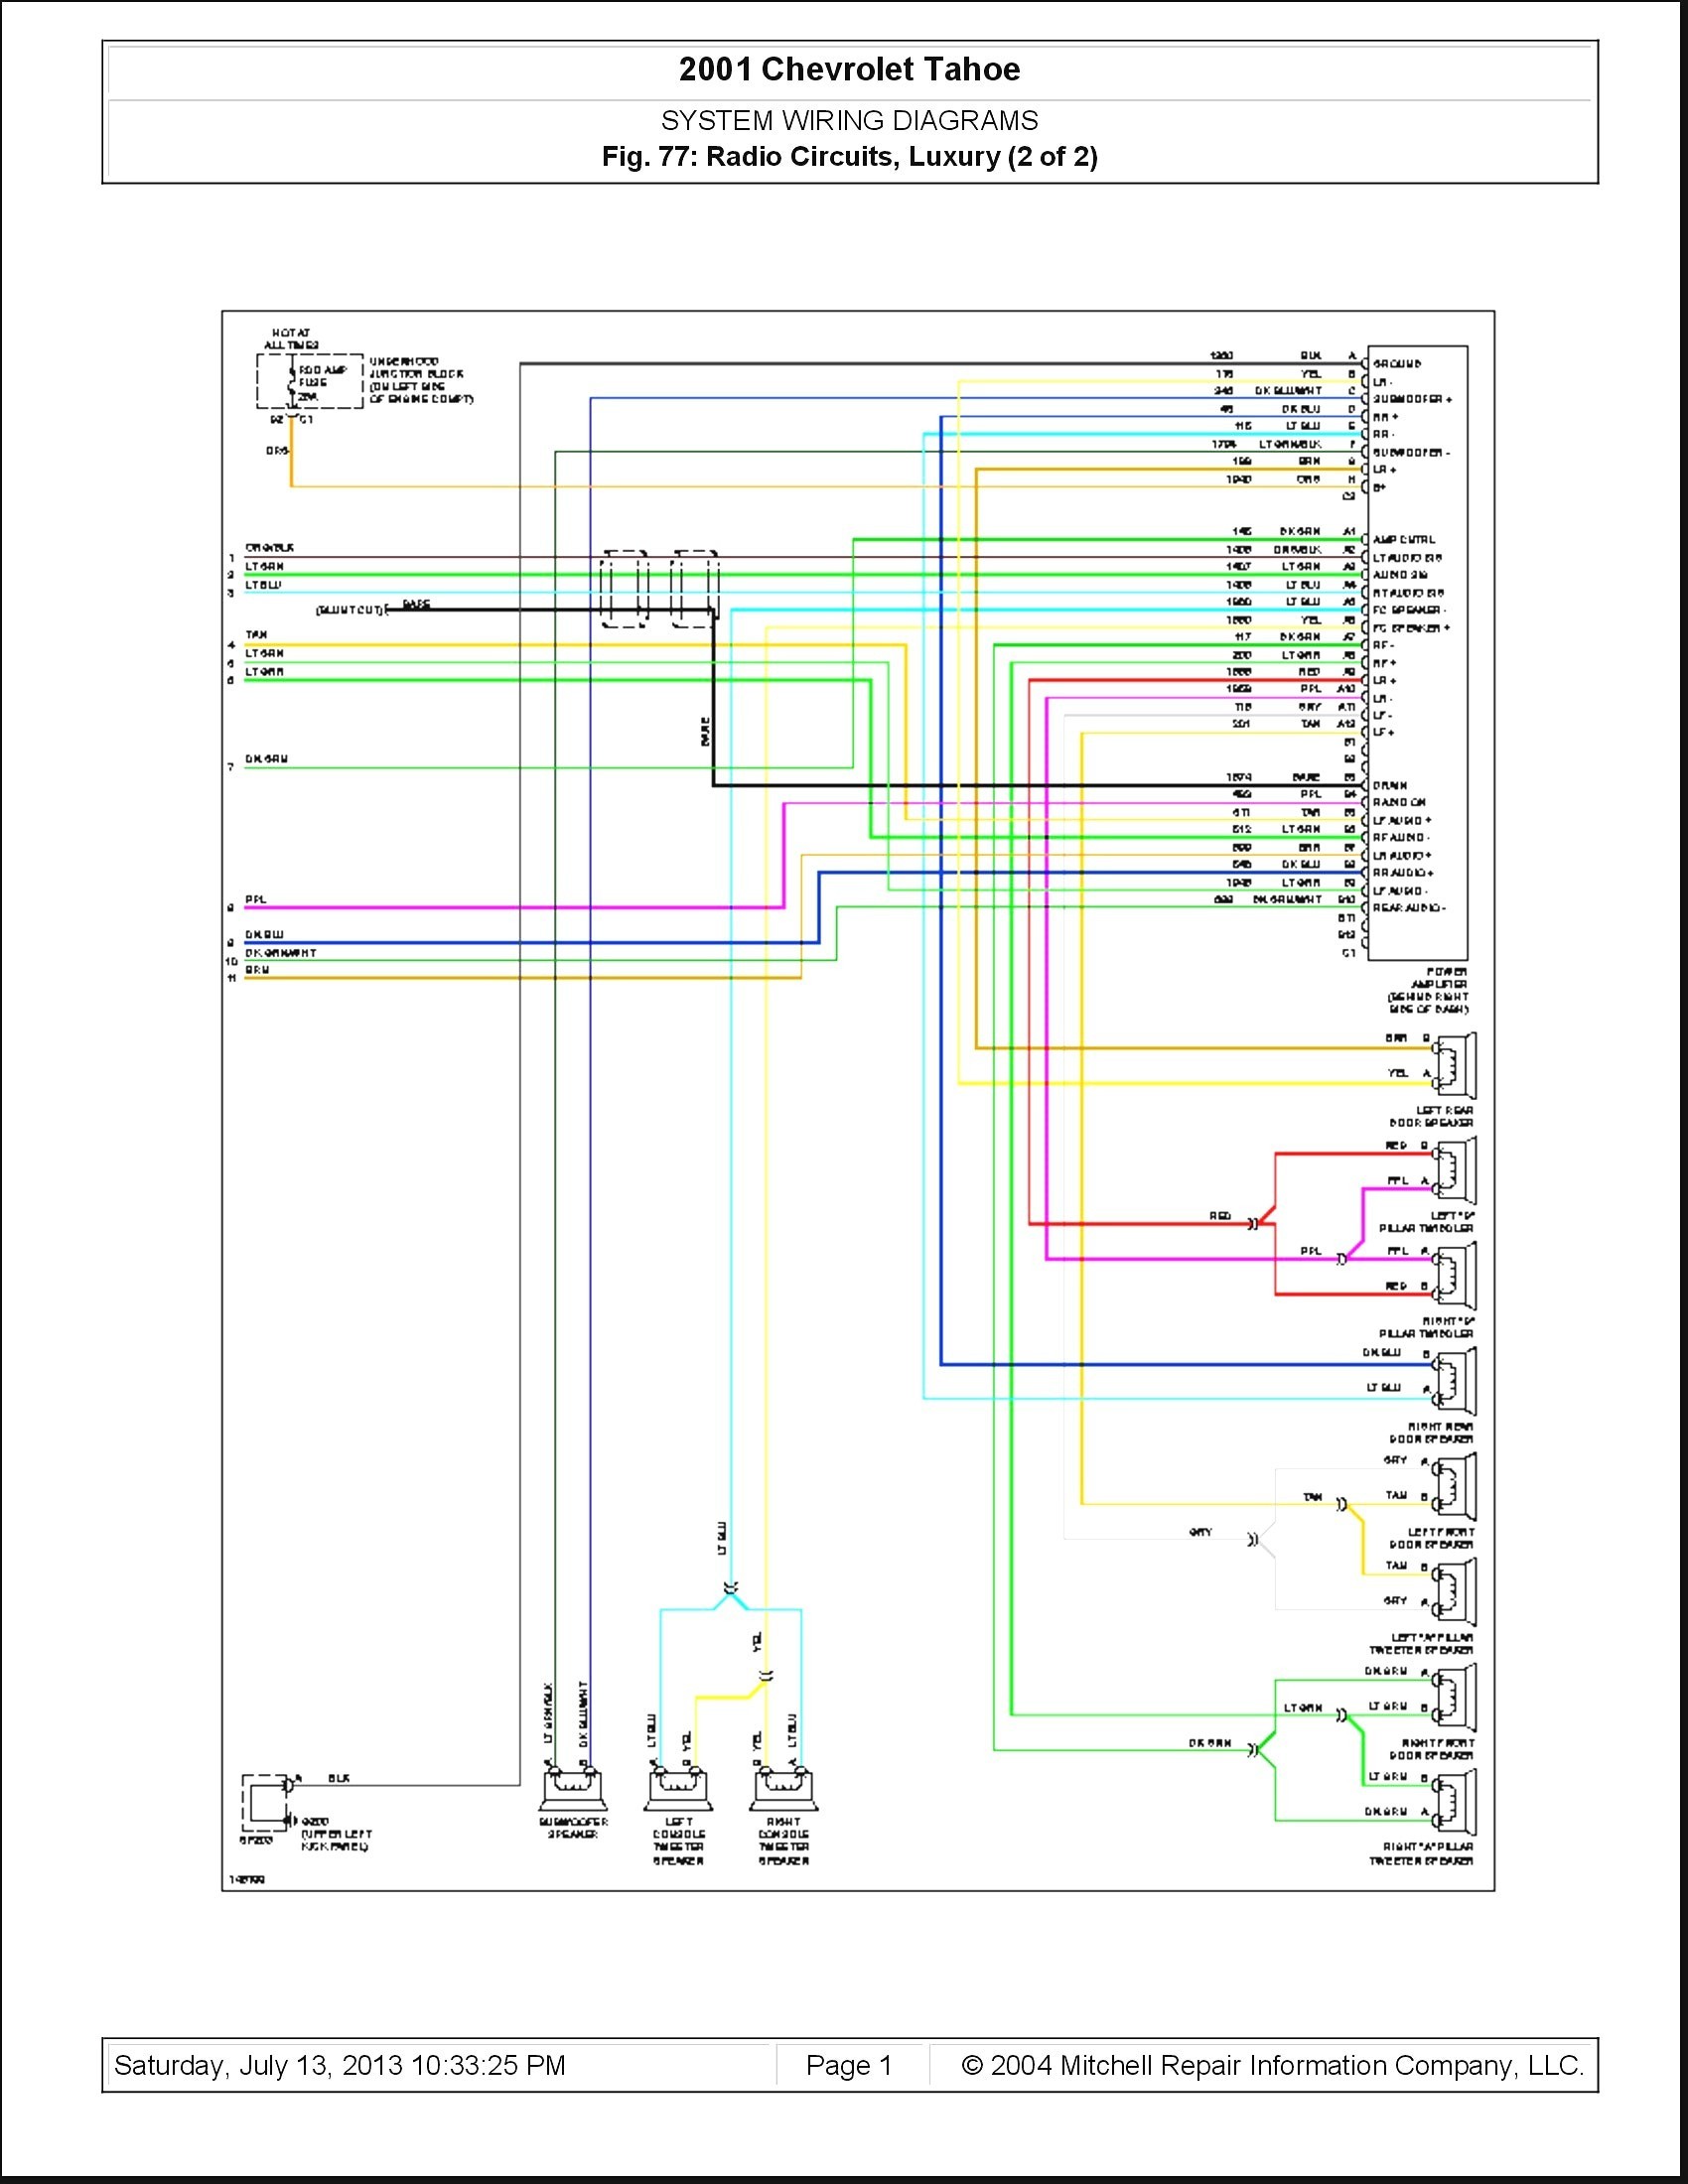 2015 Chevy Silverado Speaker Wiring Diagram Unique 2006 ford Expedition Wiring Diagram 0d – Wiring Diagram